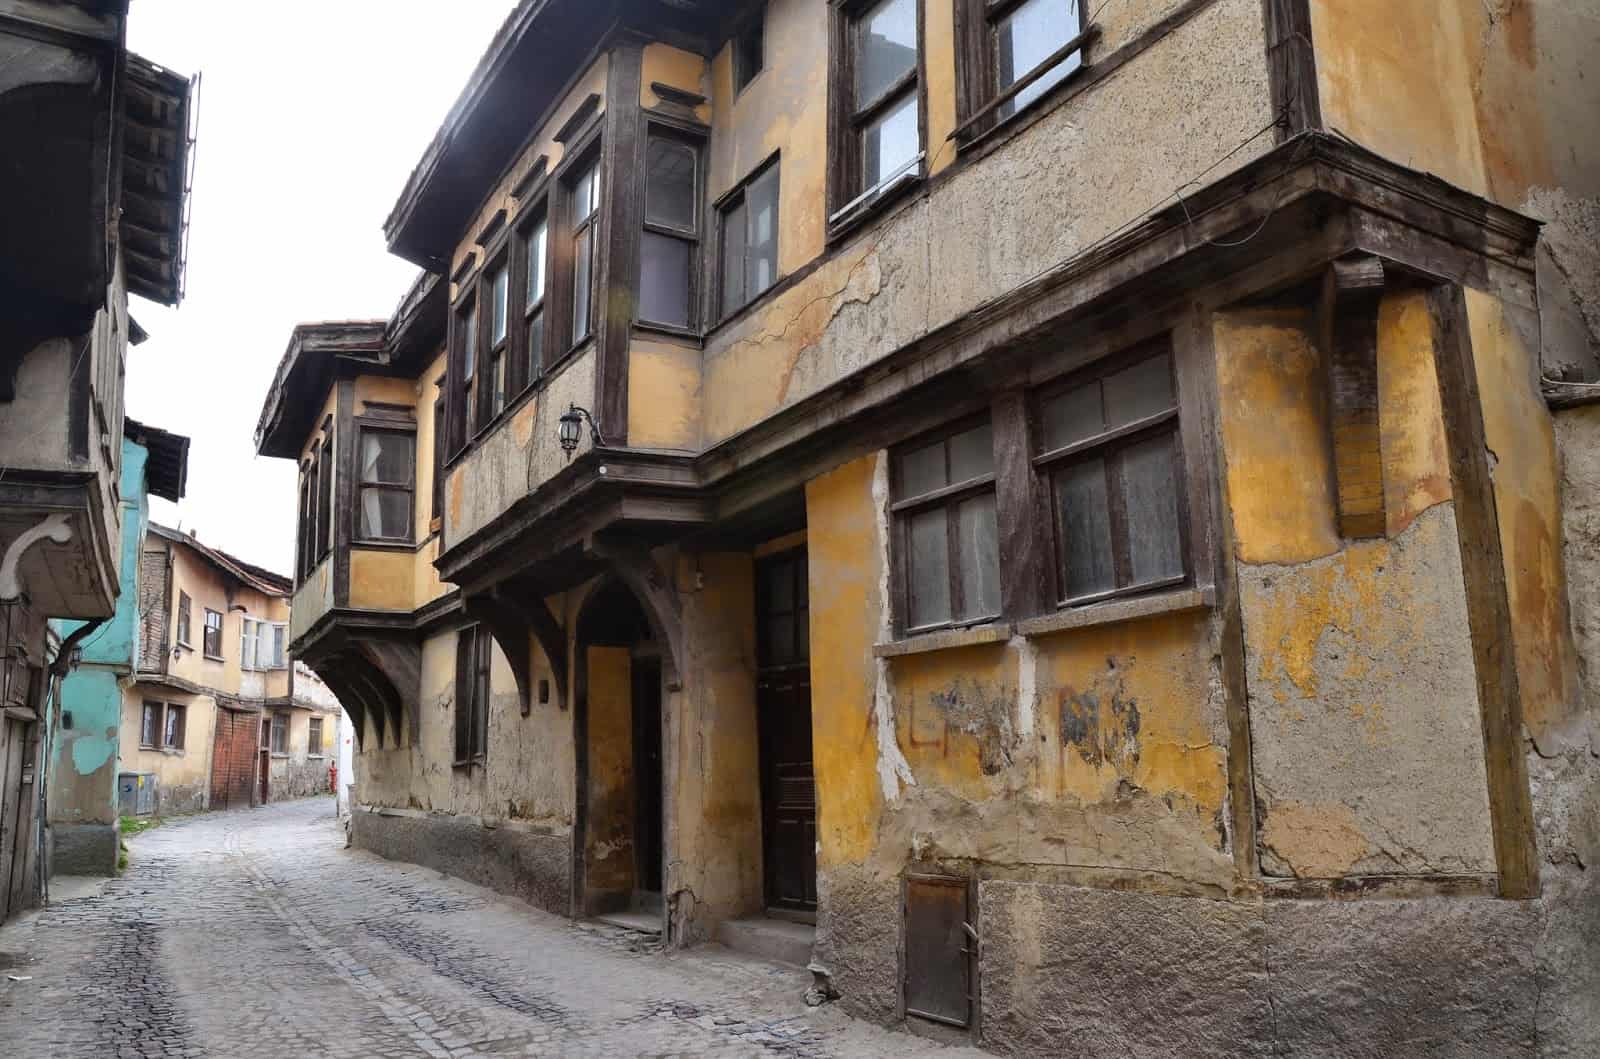 Ottoman homes on Germiyan Street in Kütahya, Turkey